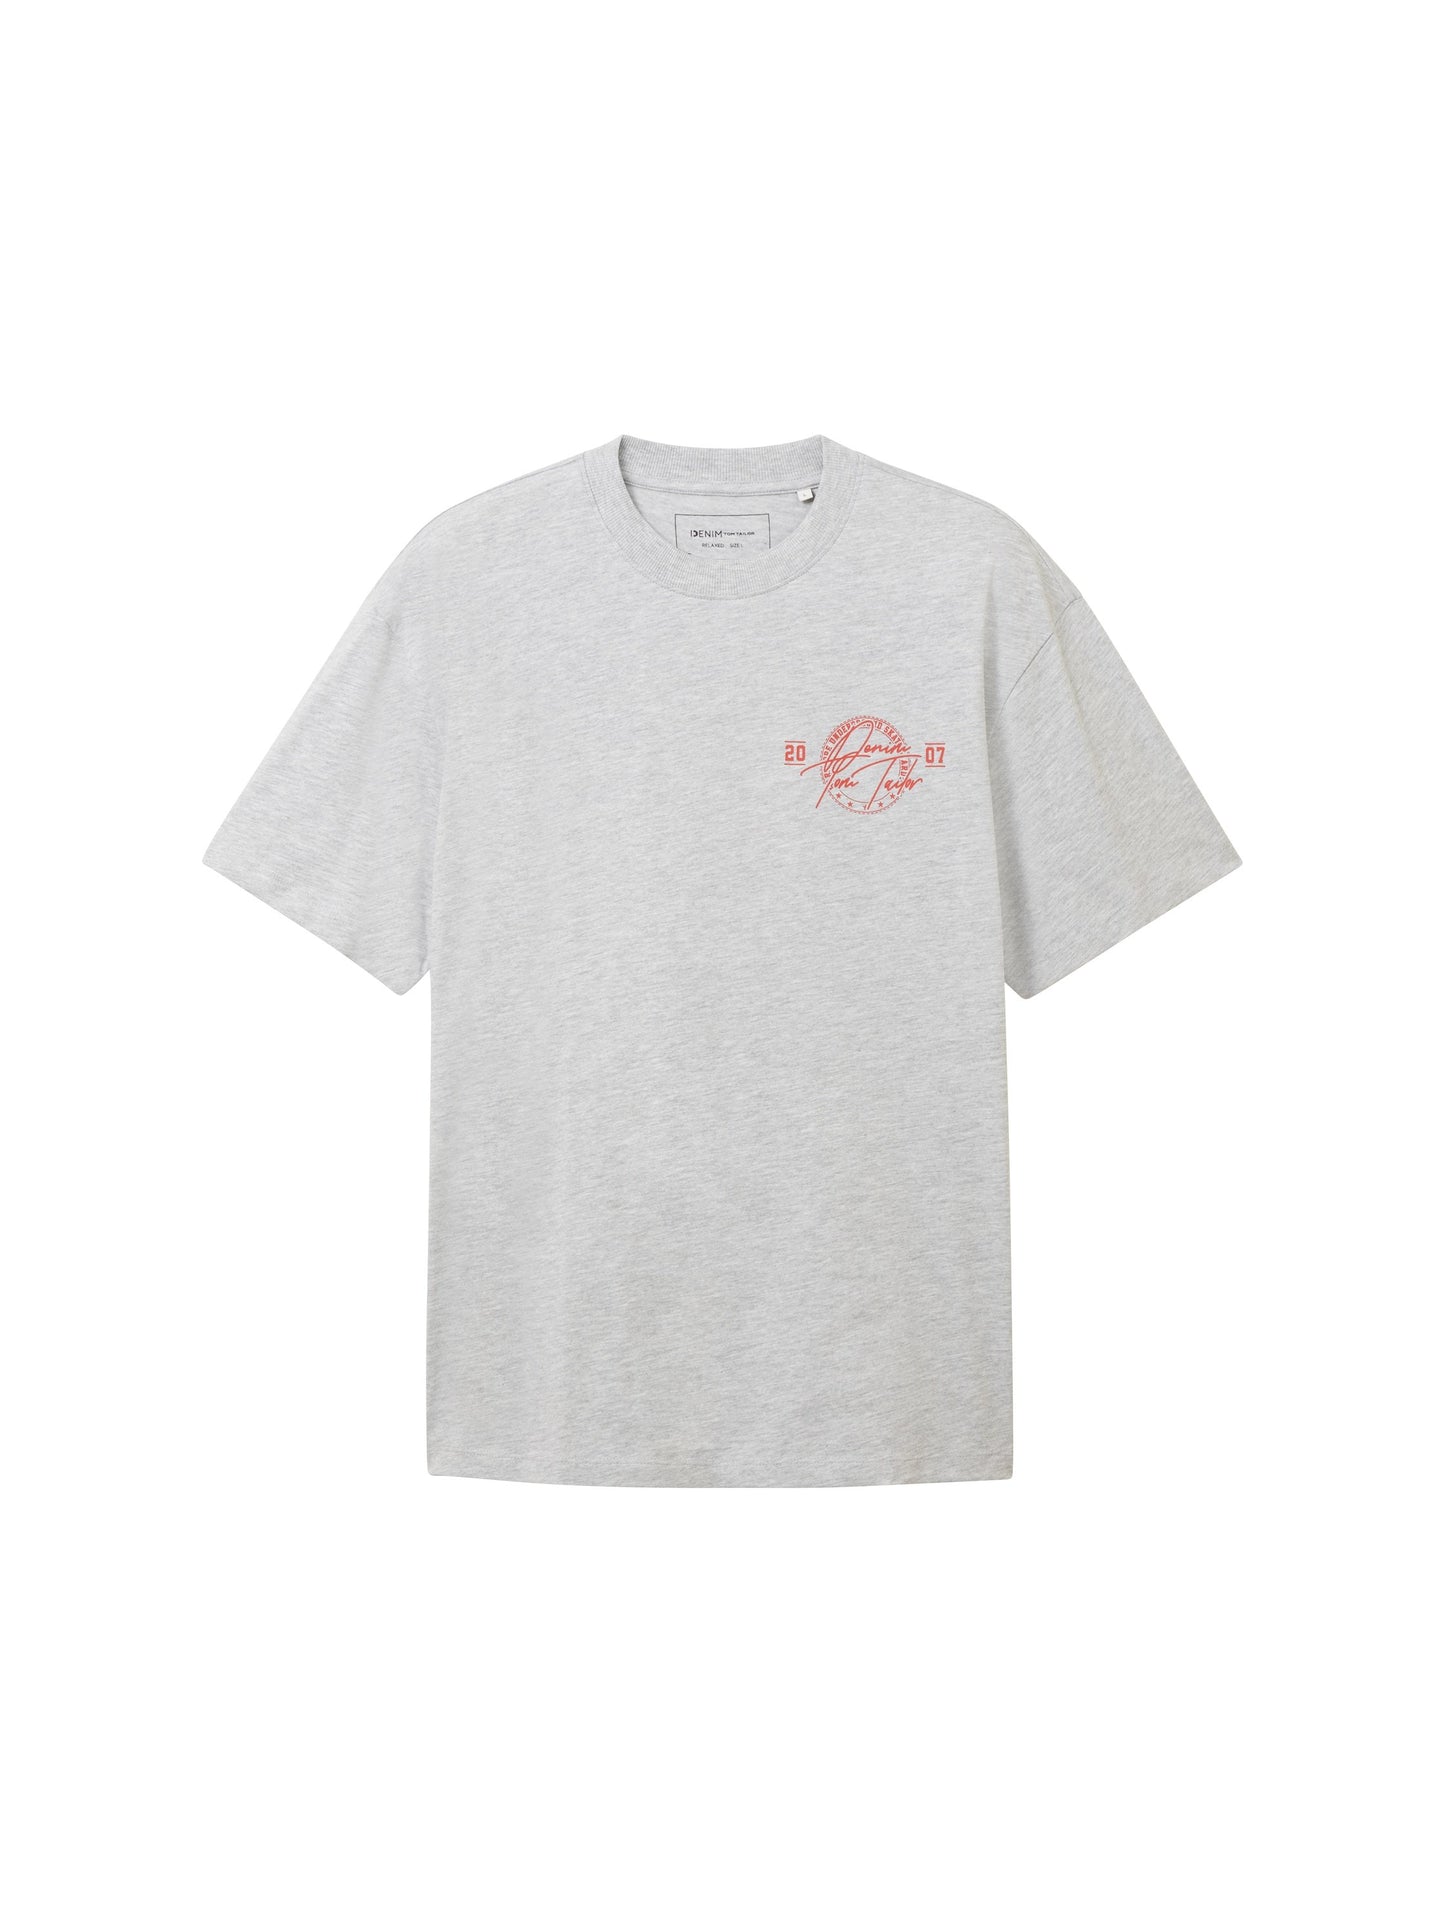 T-Shirt mit Print (Light Stone Gr)